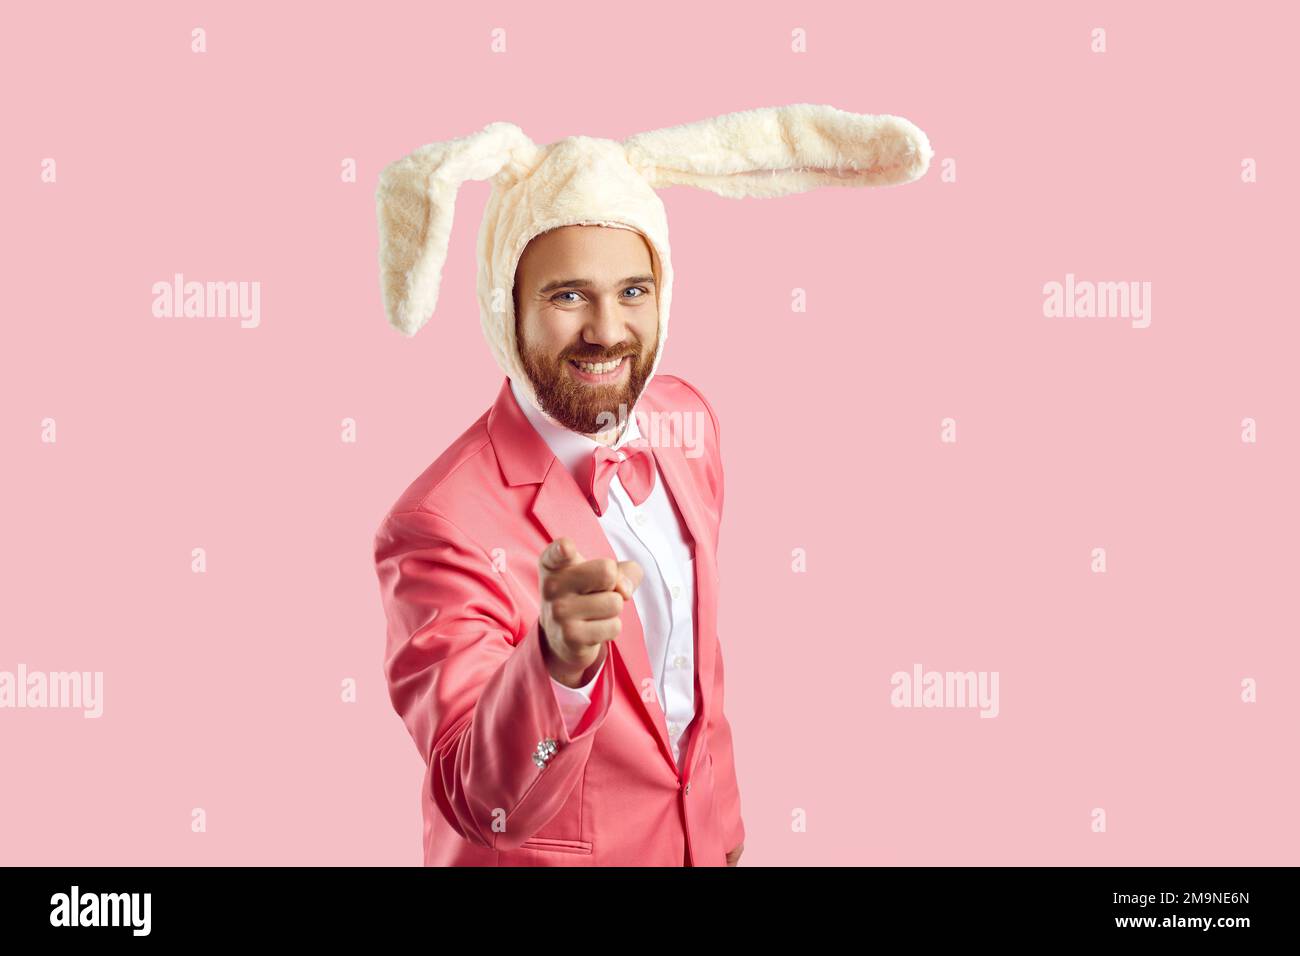 Ein glücklicher junger Mann mit lustigen Osterhäschen-Ohren, der lächelt und mit dem Finger auf die Kamera zeigt Stockfoto